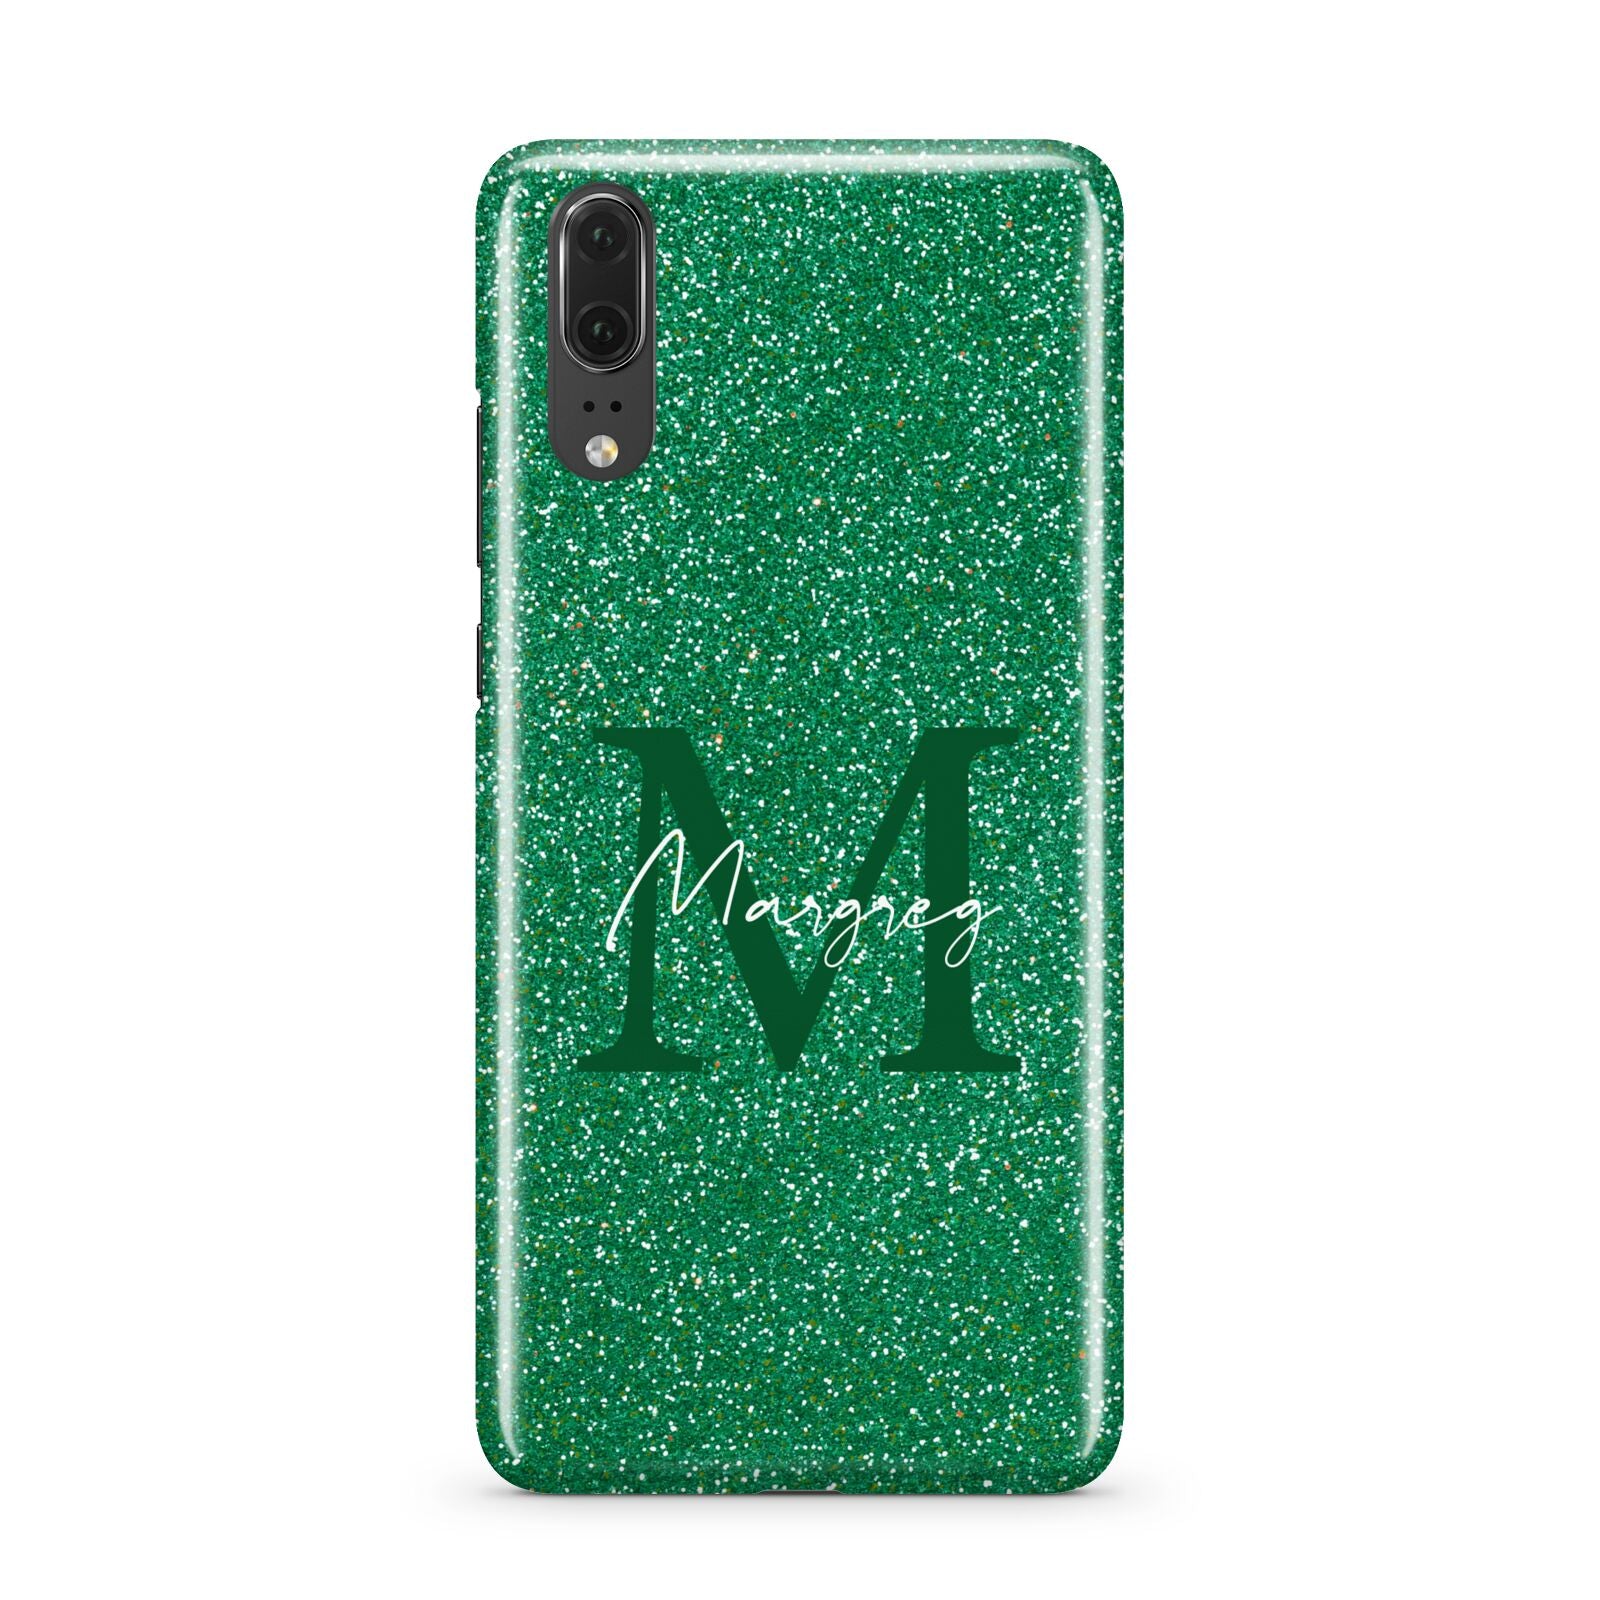 Green Monogram Huawei P20 Phone Case